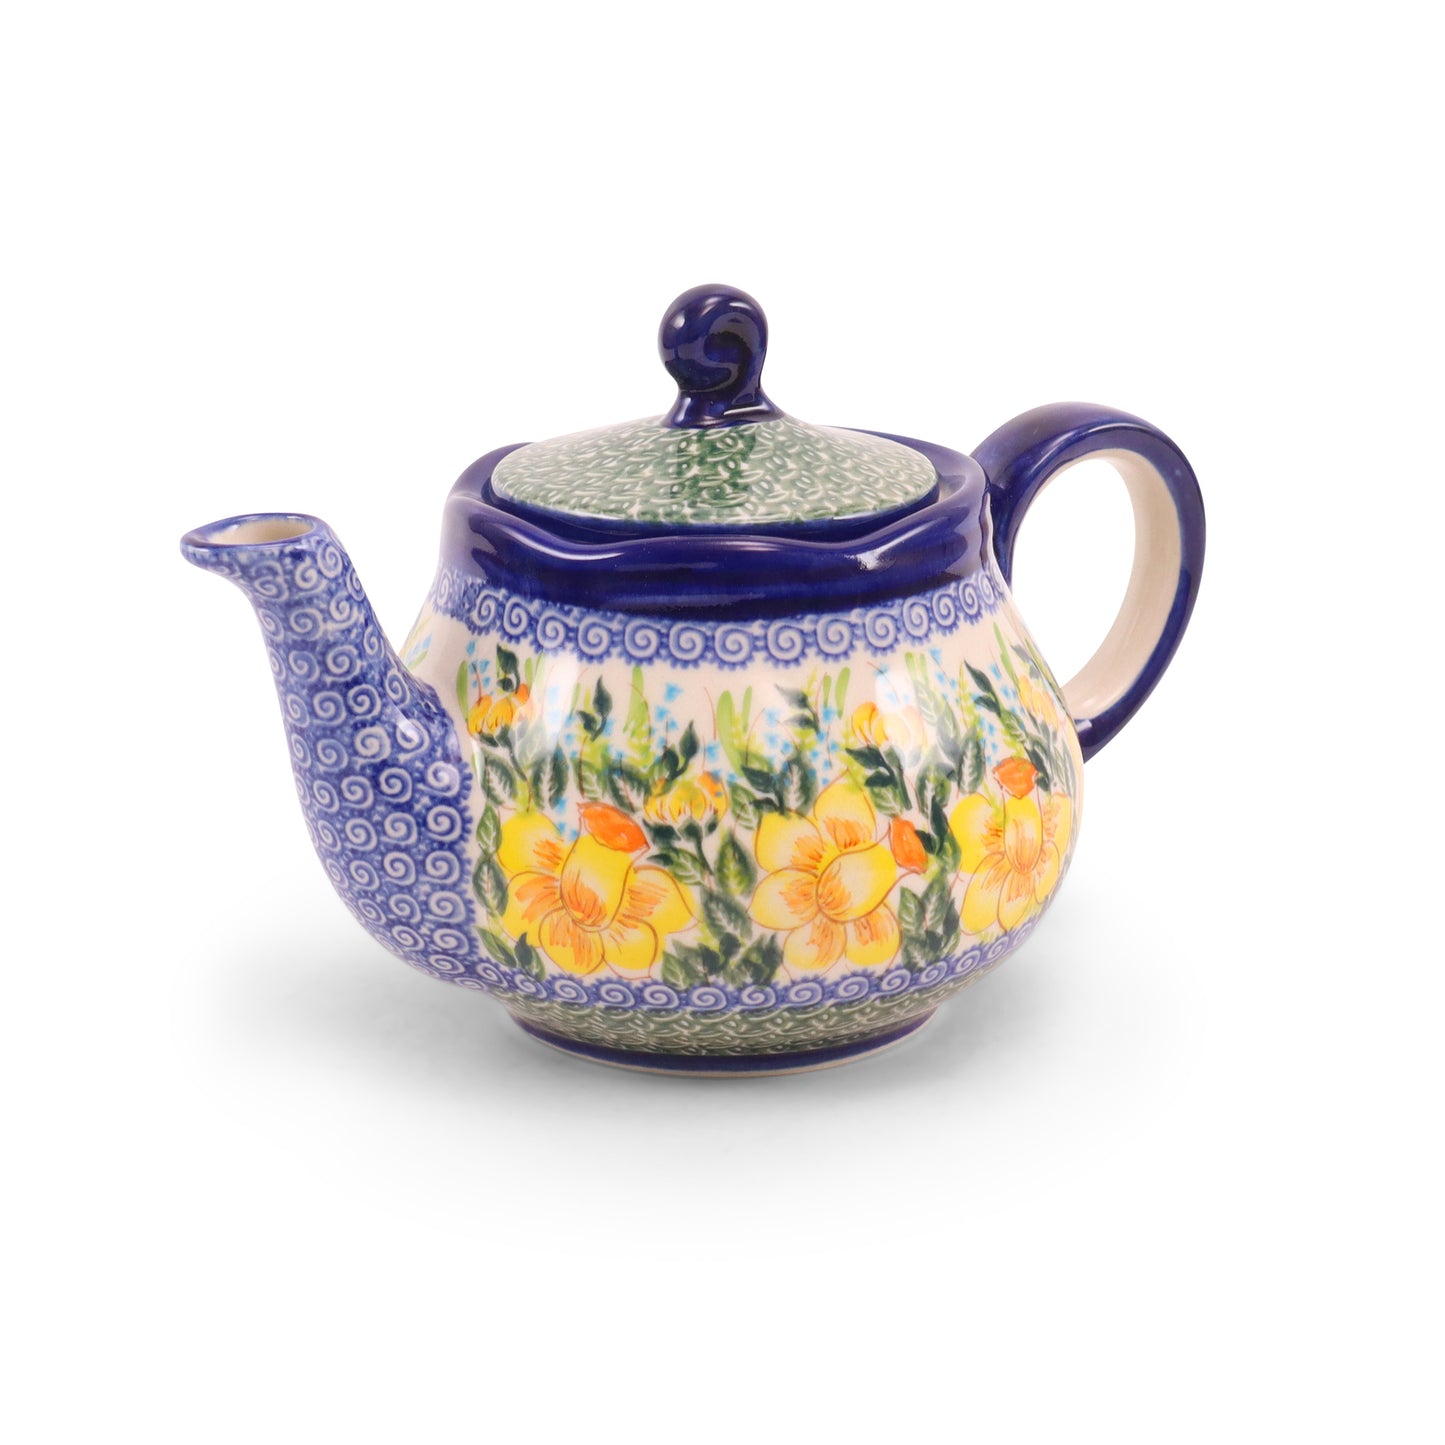 24oz Fruti Teapot. Pattern: Daffodil Full